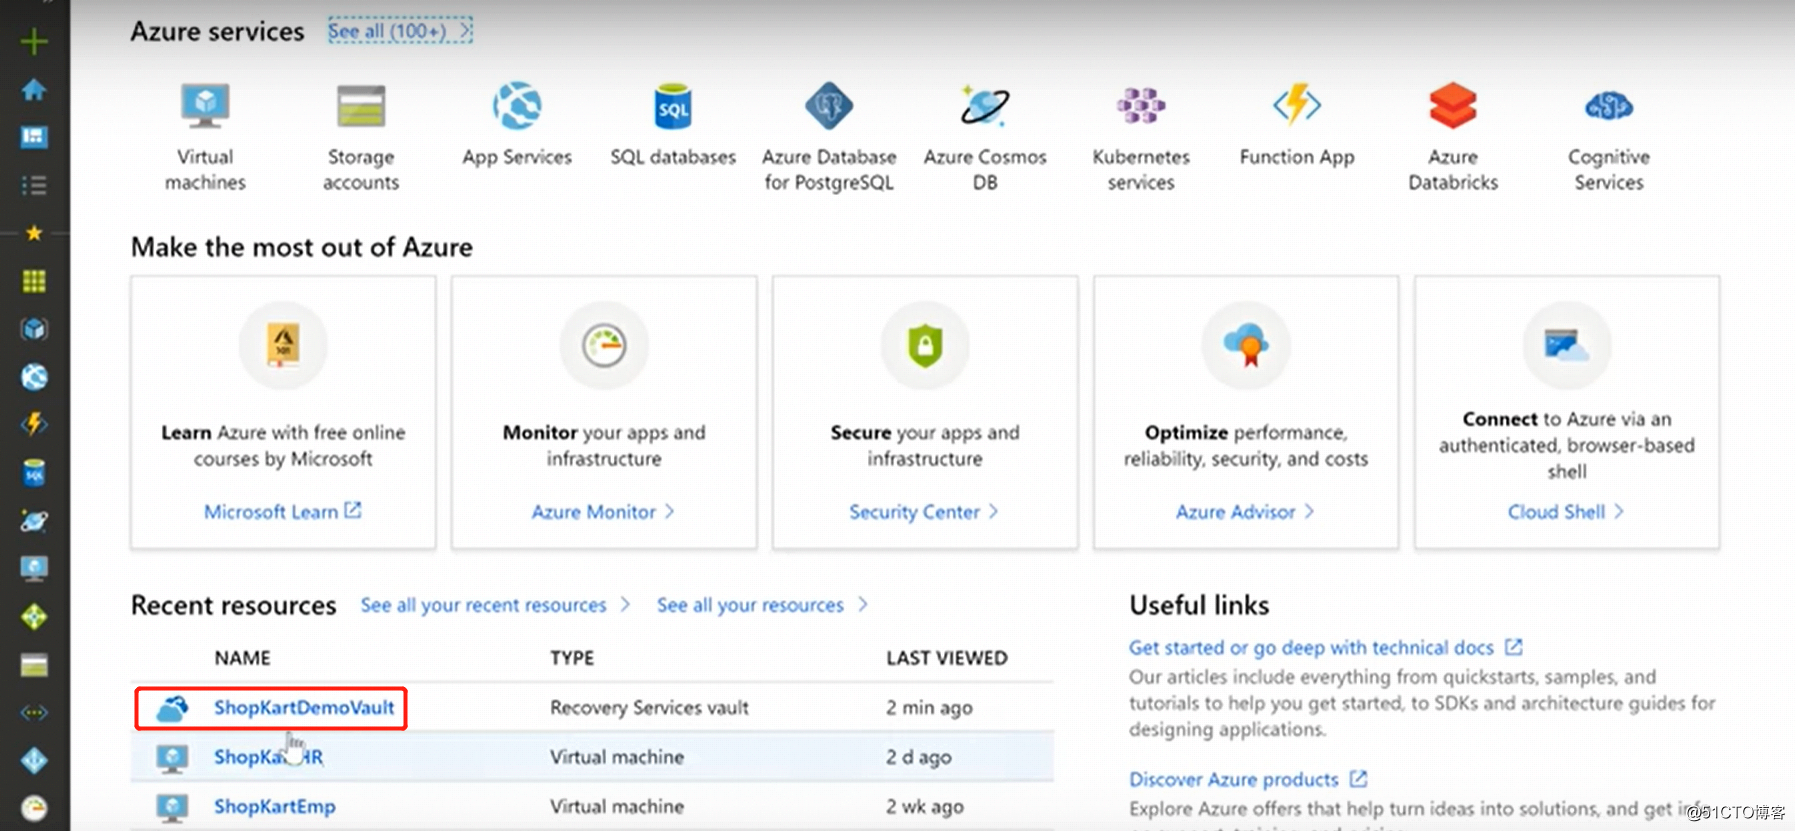 Azure 支持SQL Server 2019备份和文件还原